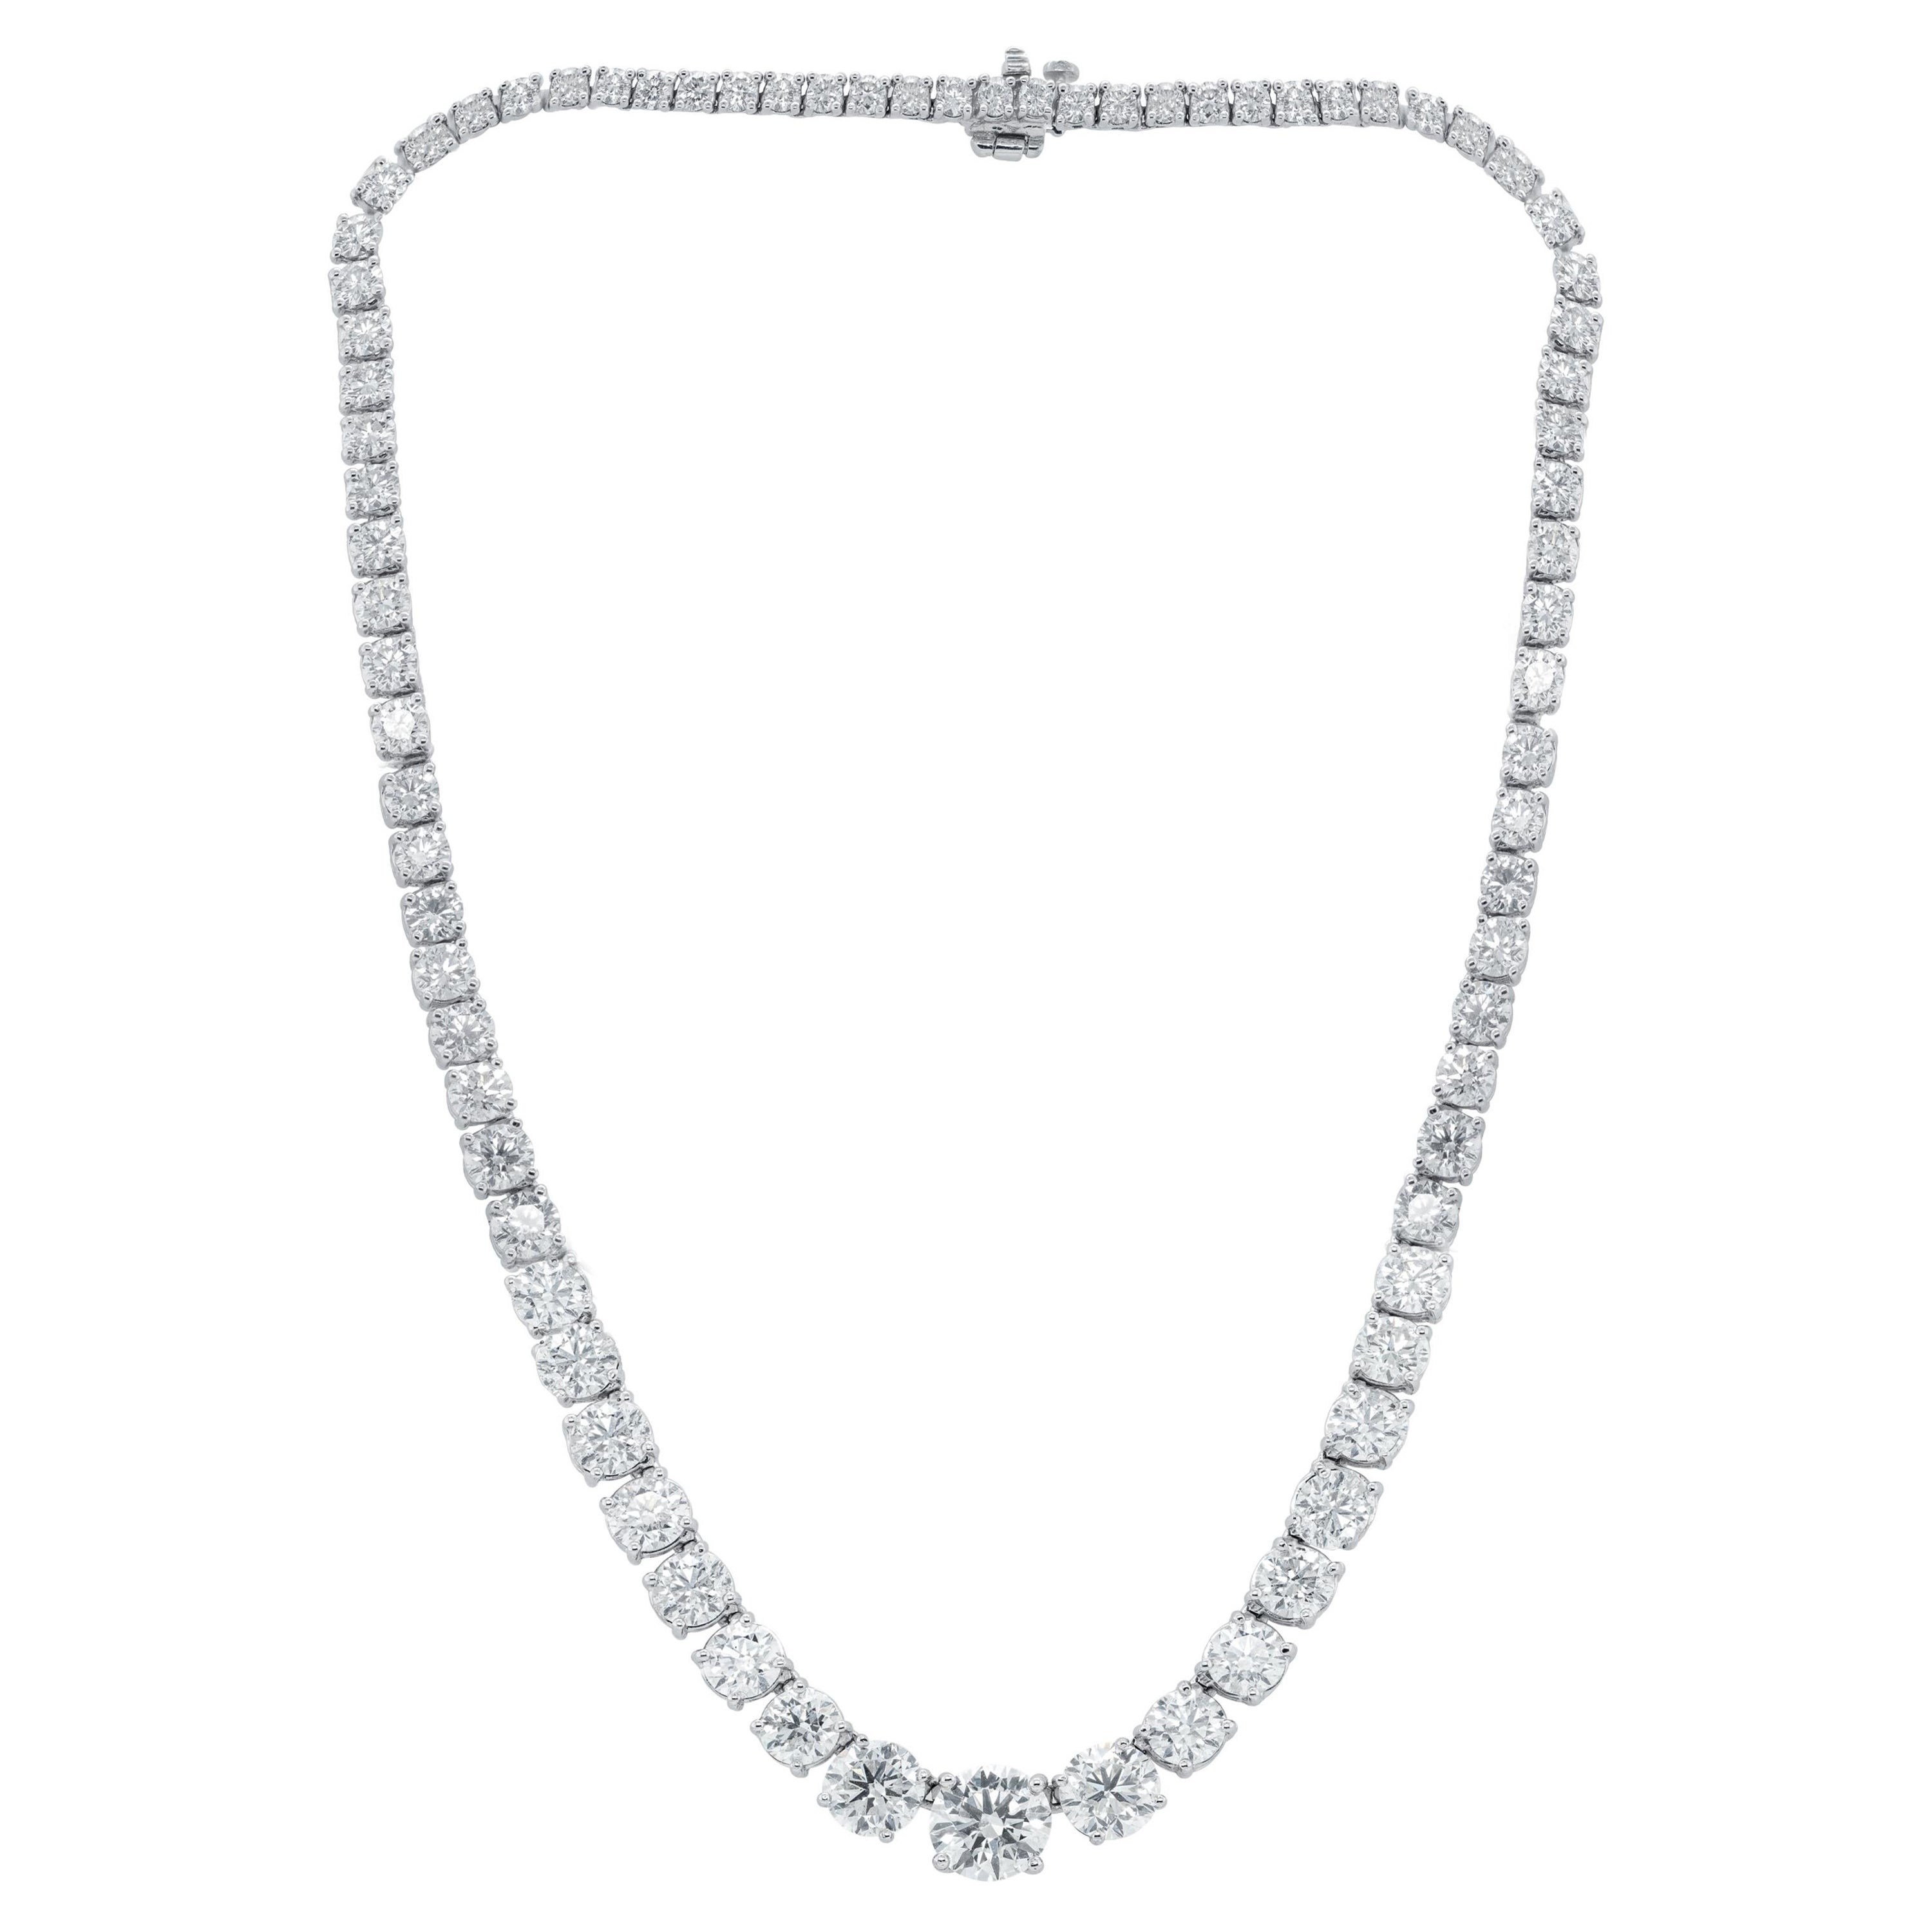 Diana M. 24.35 Carat Graduated Diamond Tennis Necklace For Sale